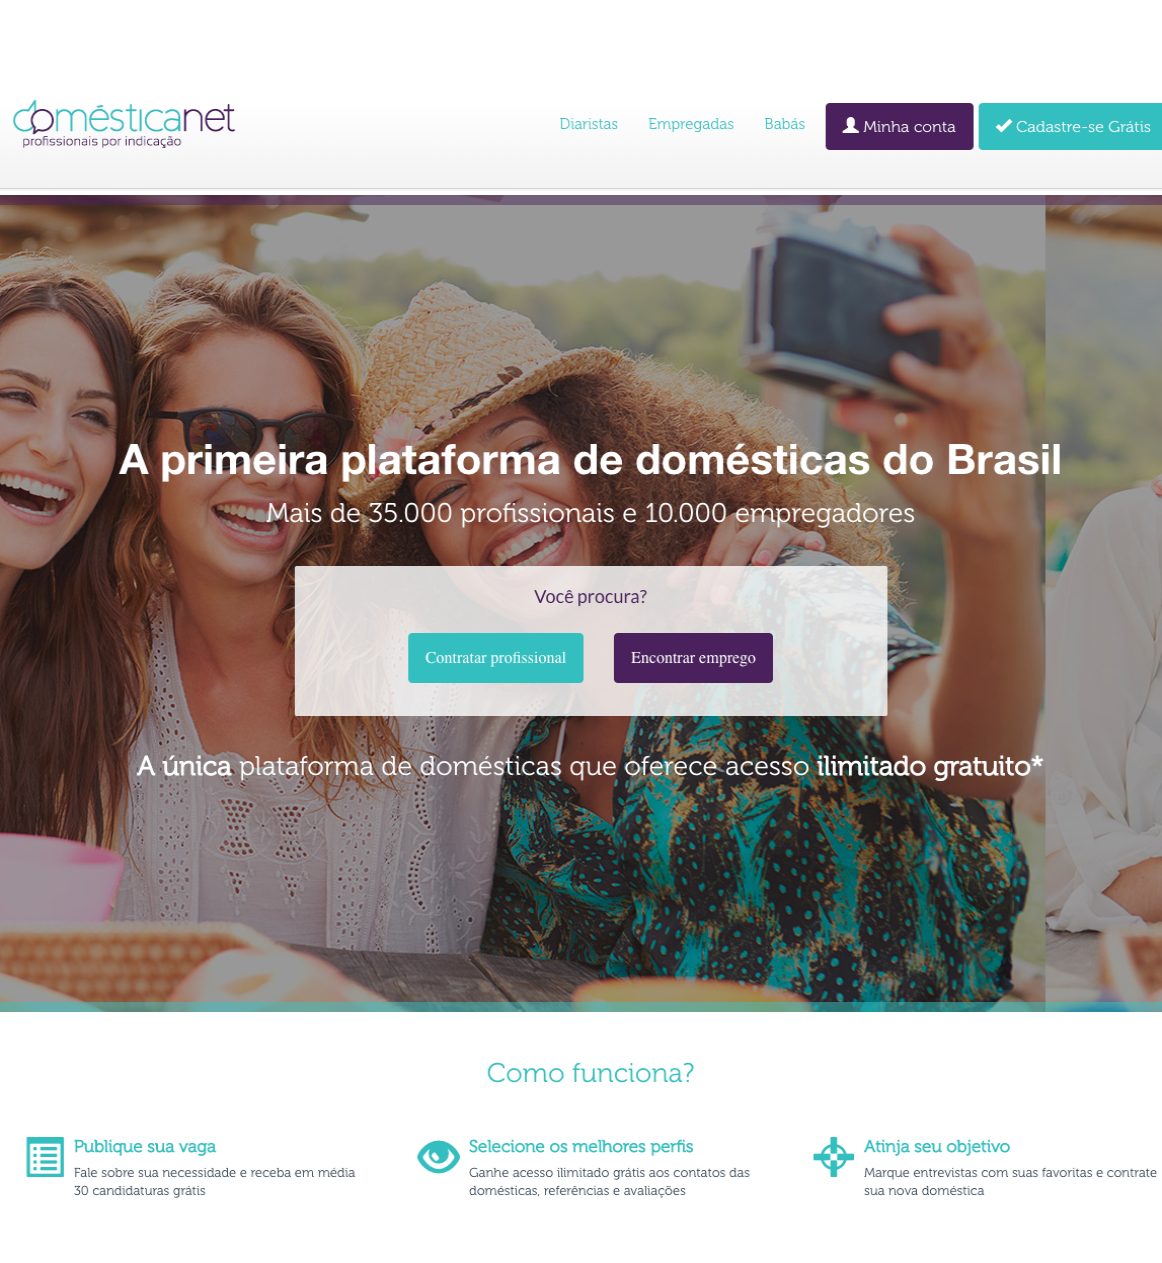 Homepage da Domesticanet